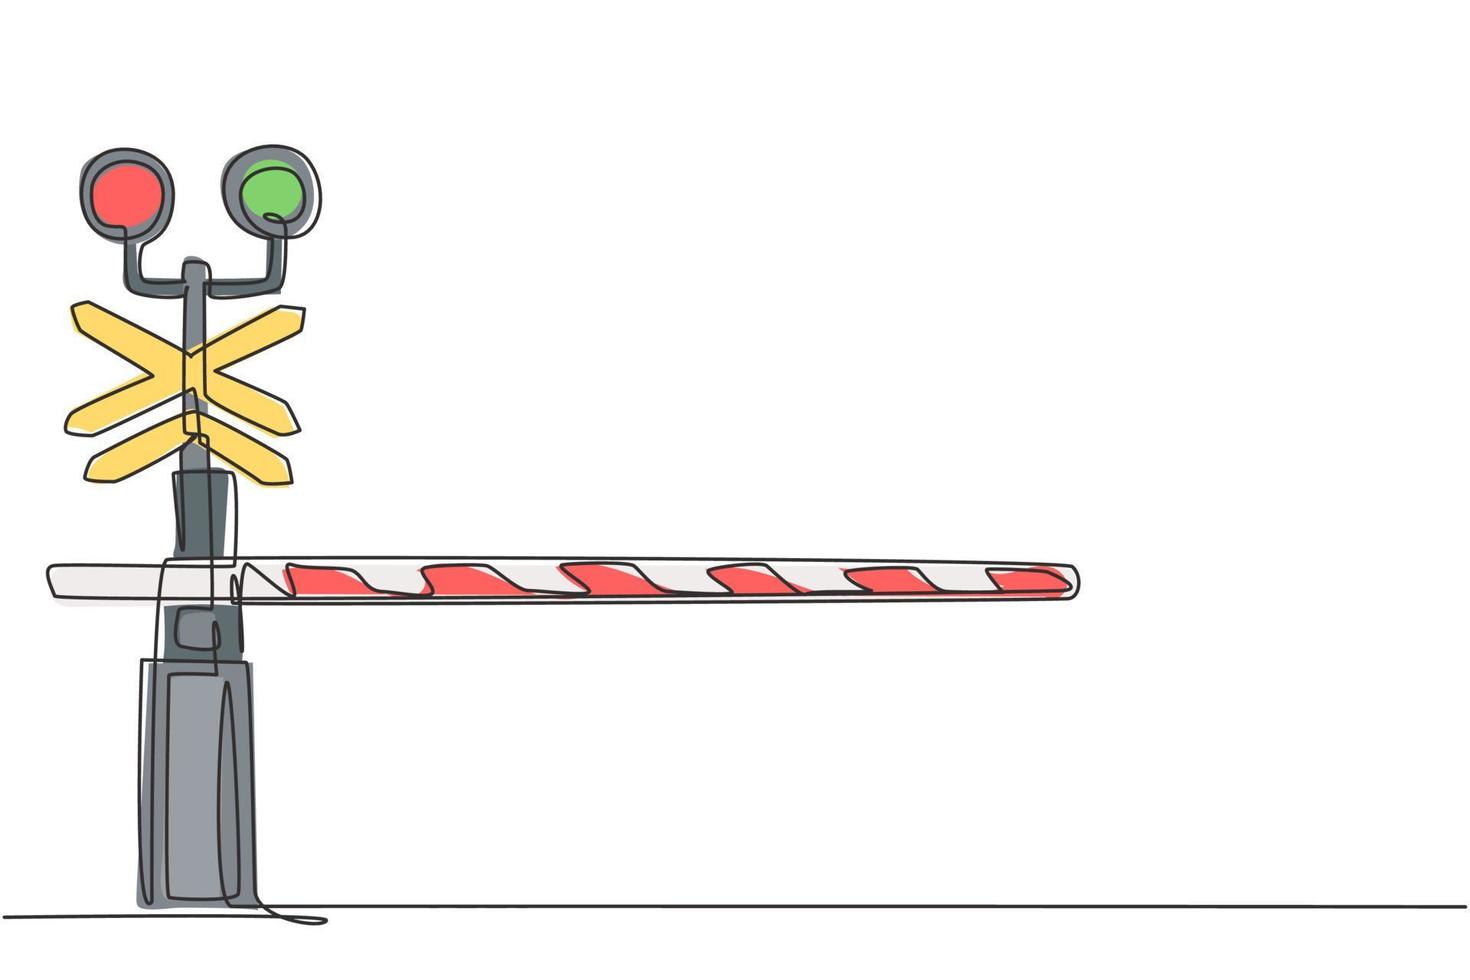 uma linha contínua desenhando uma barreira ferroviária com faixas, sinais e luzes de advertência fecha os cruzamentos da ferrovia para impedir a entrada de veículos. ilustração gráfica do vetor do desenho do desenho de linha única.